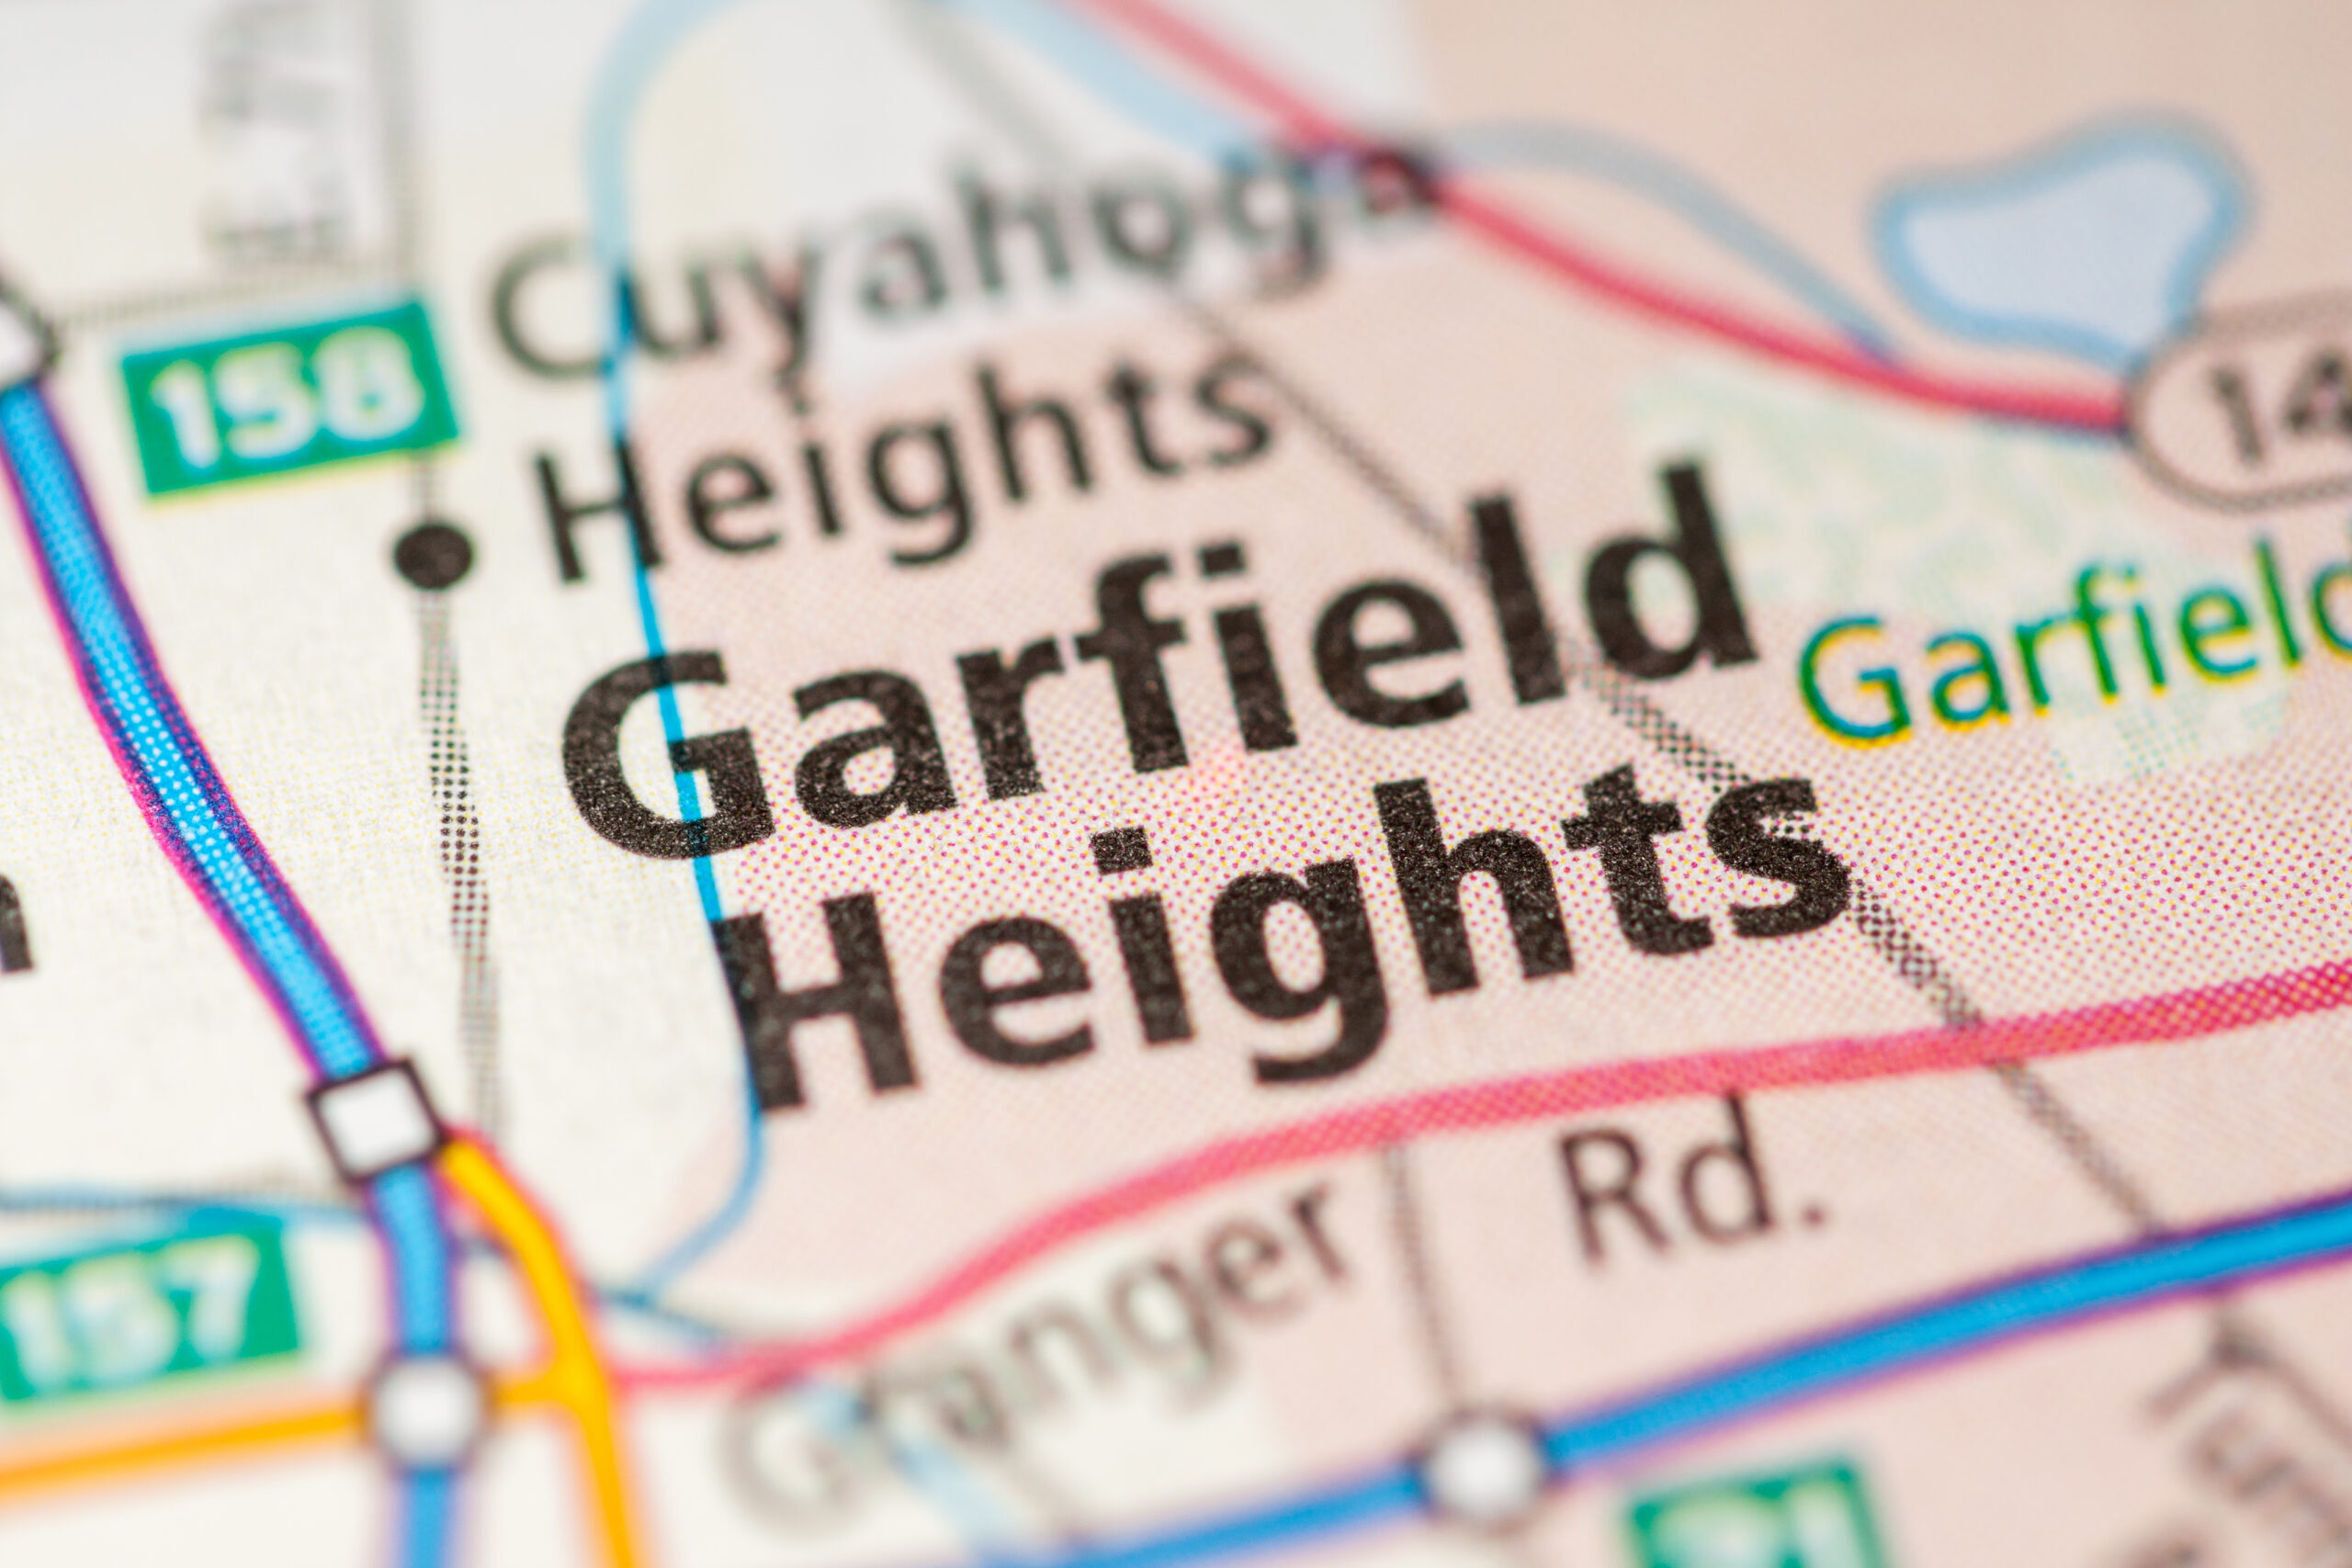 garfield heights hvac company